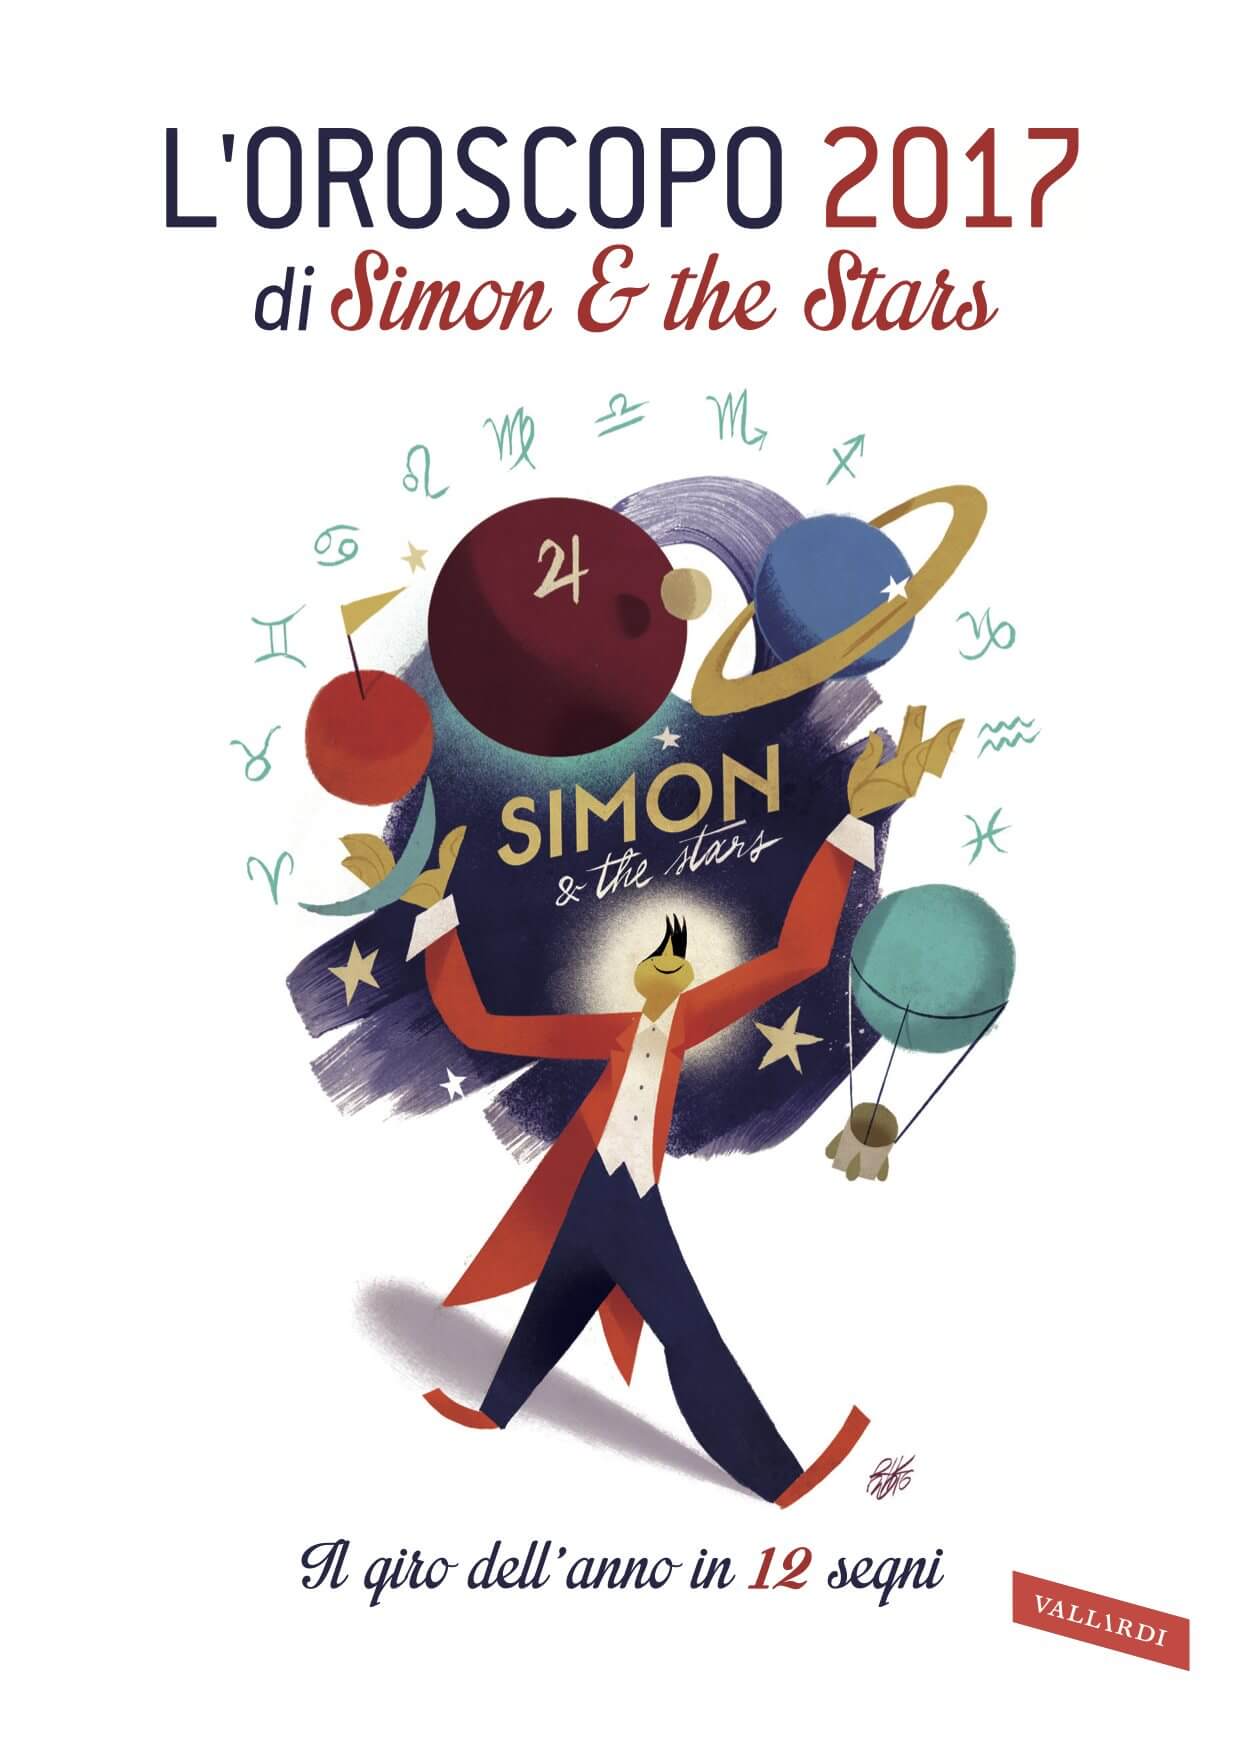 Simon & the Stars: "L'oroscopo (gay e non) dell'anno nuovo!" - SIMONOK17v 1 - Gay.it